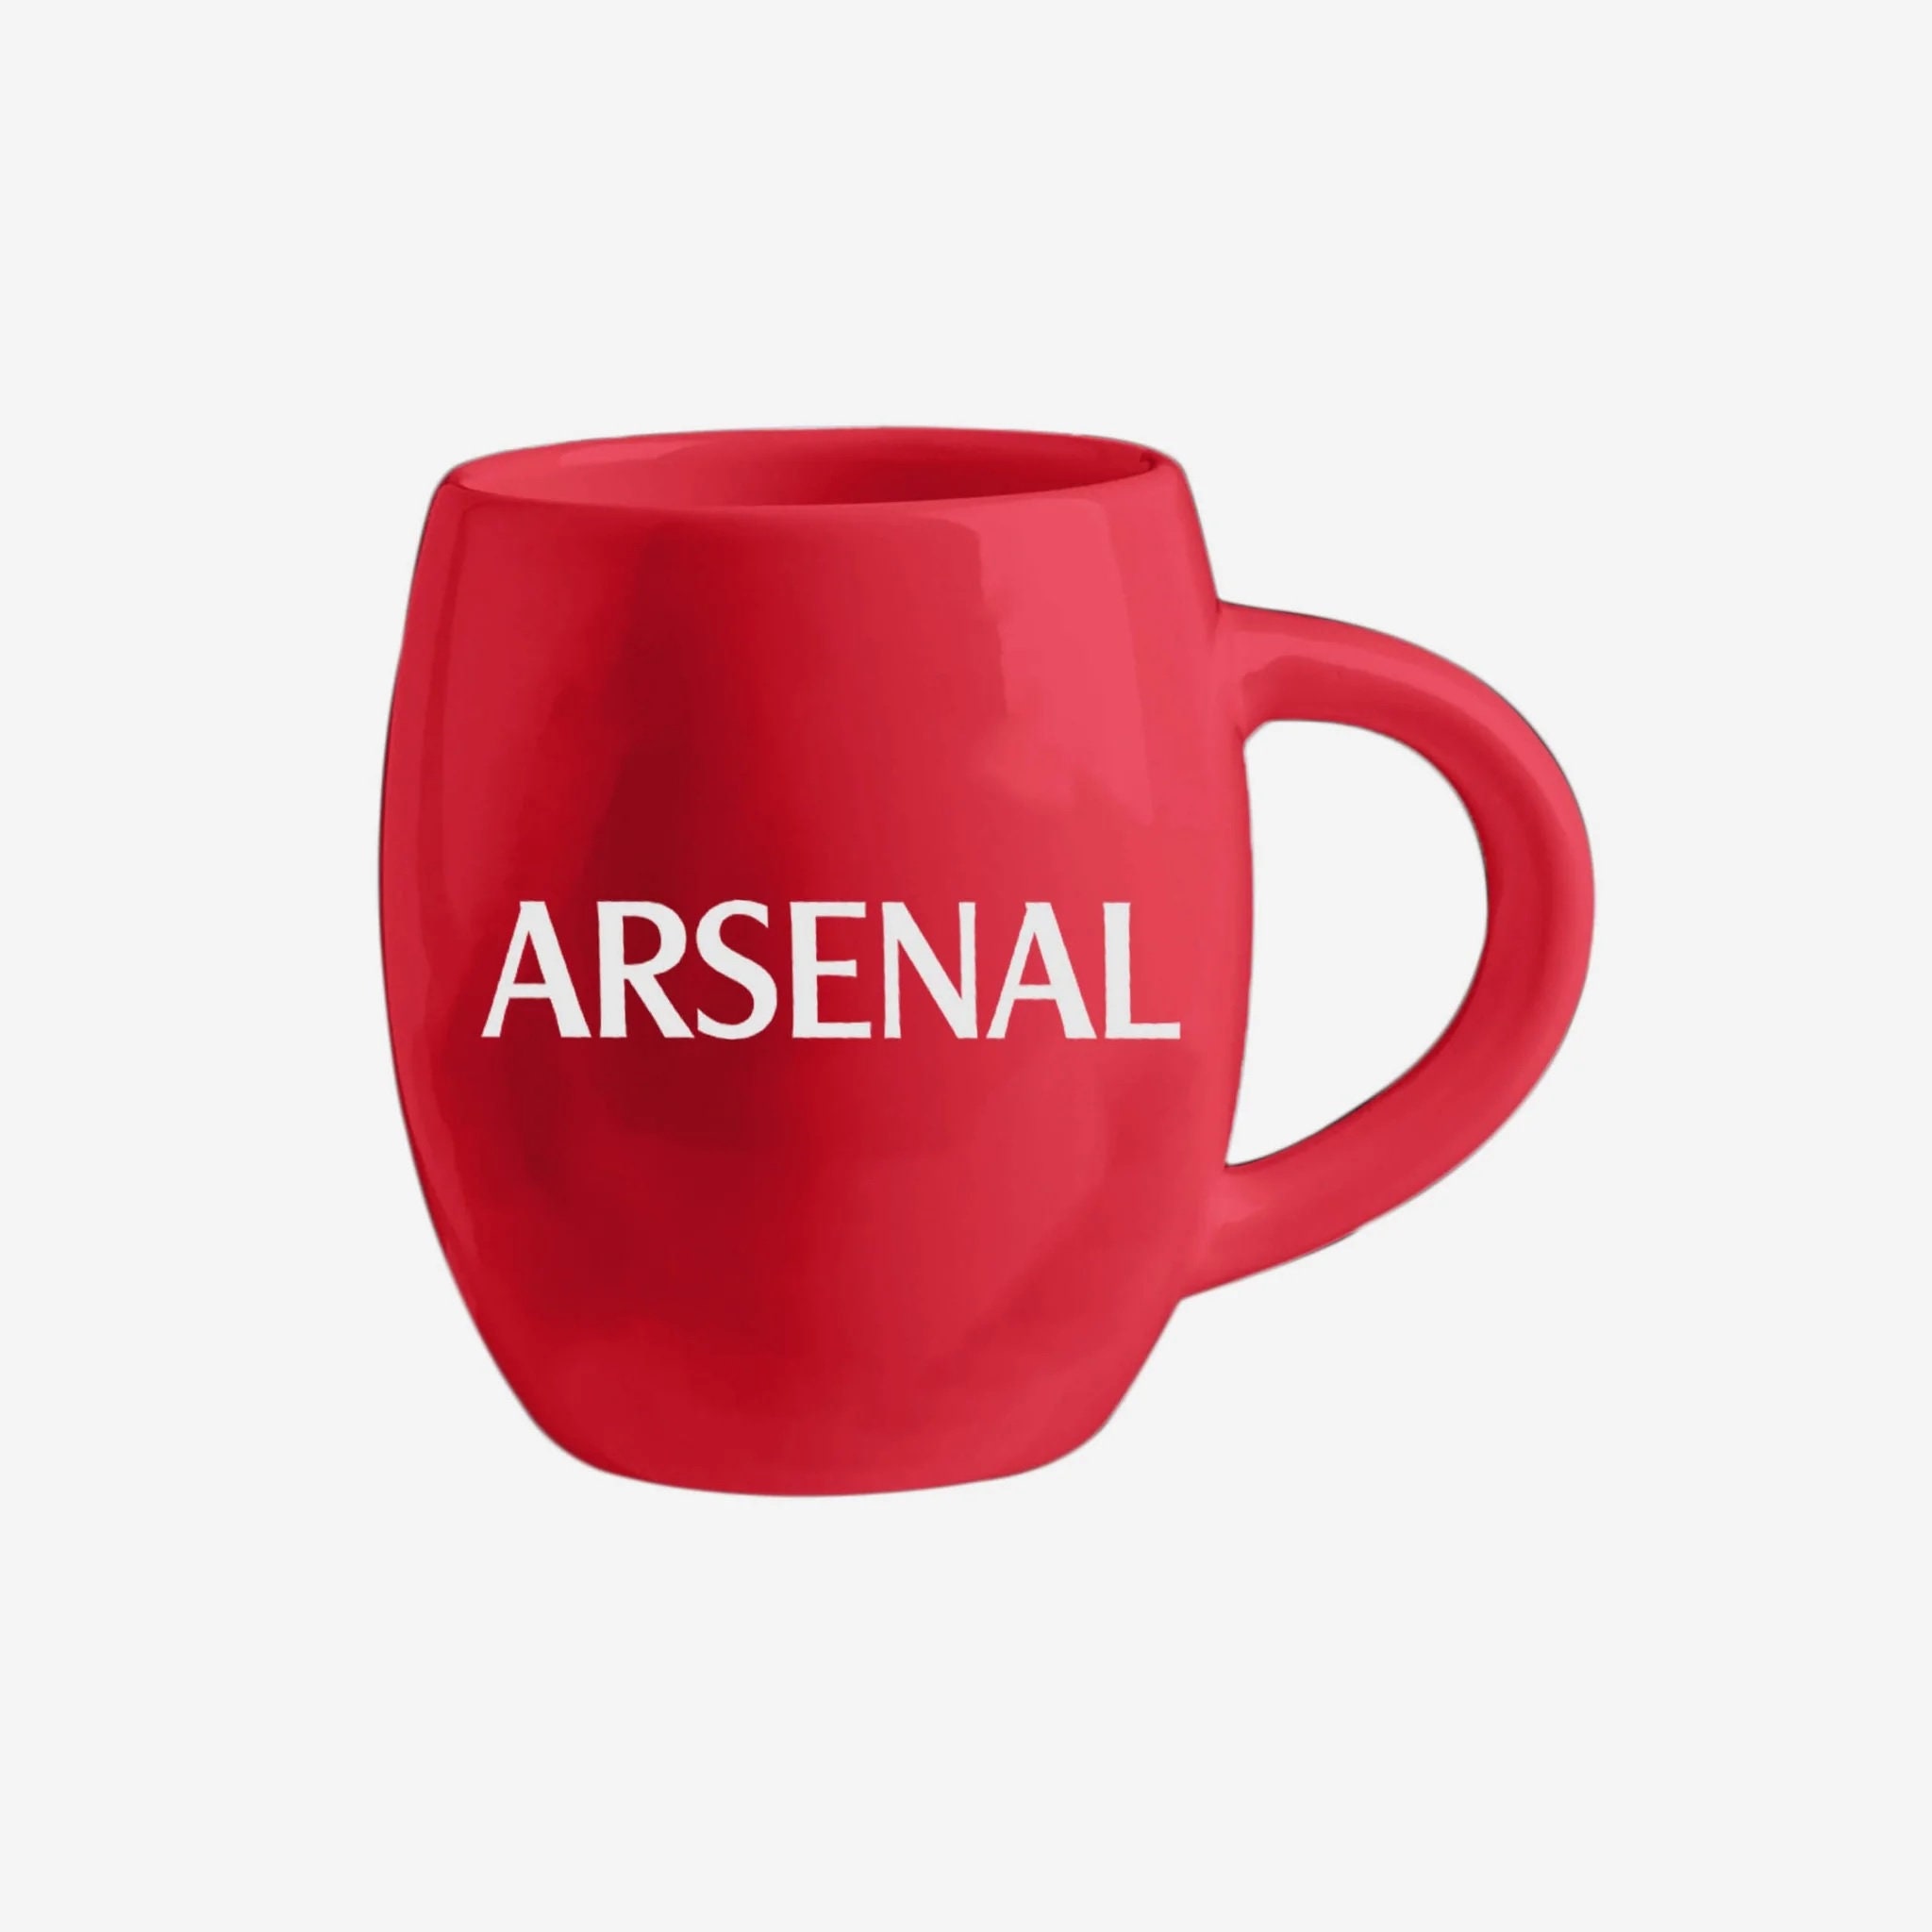 Arsenal FC Arsen Wenger SoccerStarz Mini 2 Inch Figure Officially Licensed